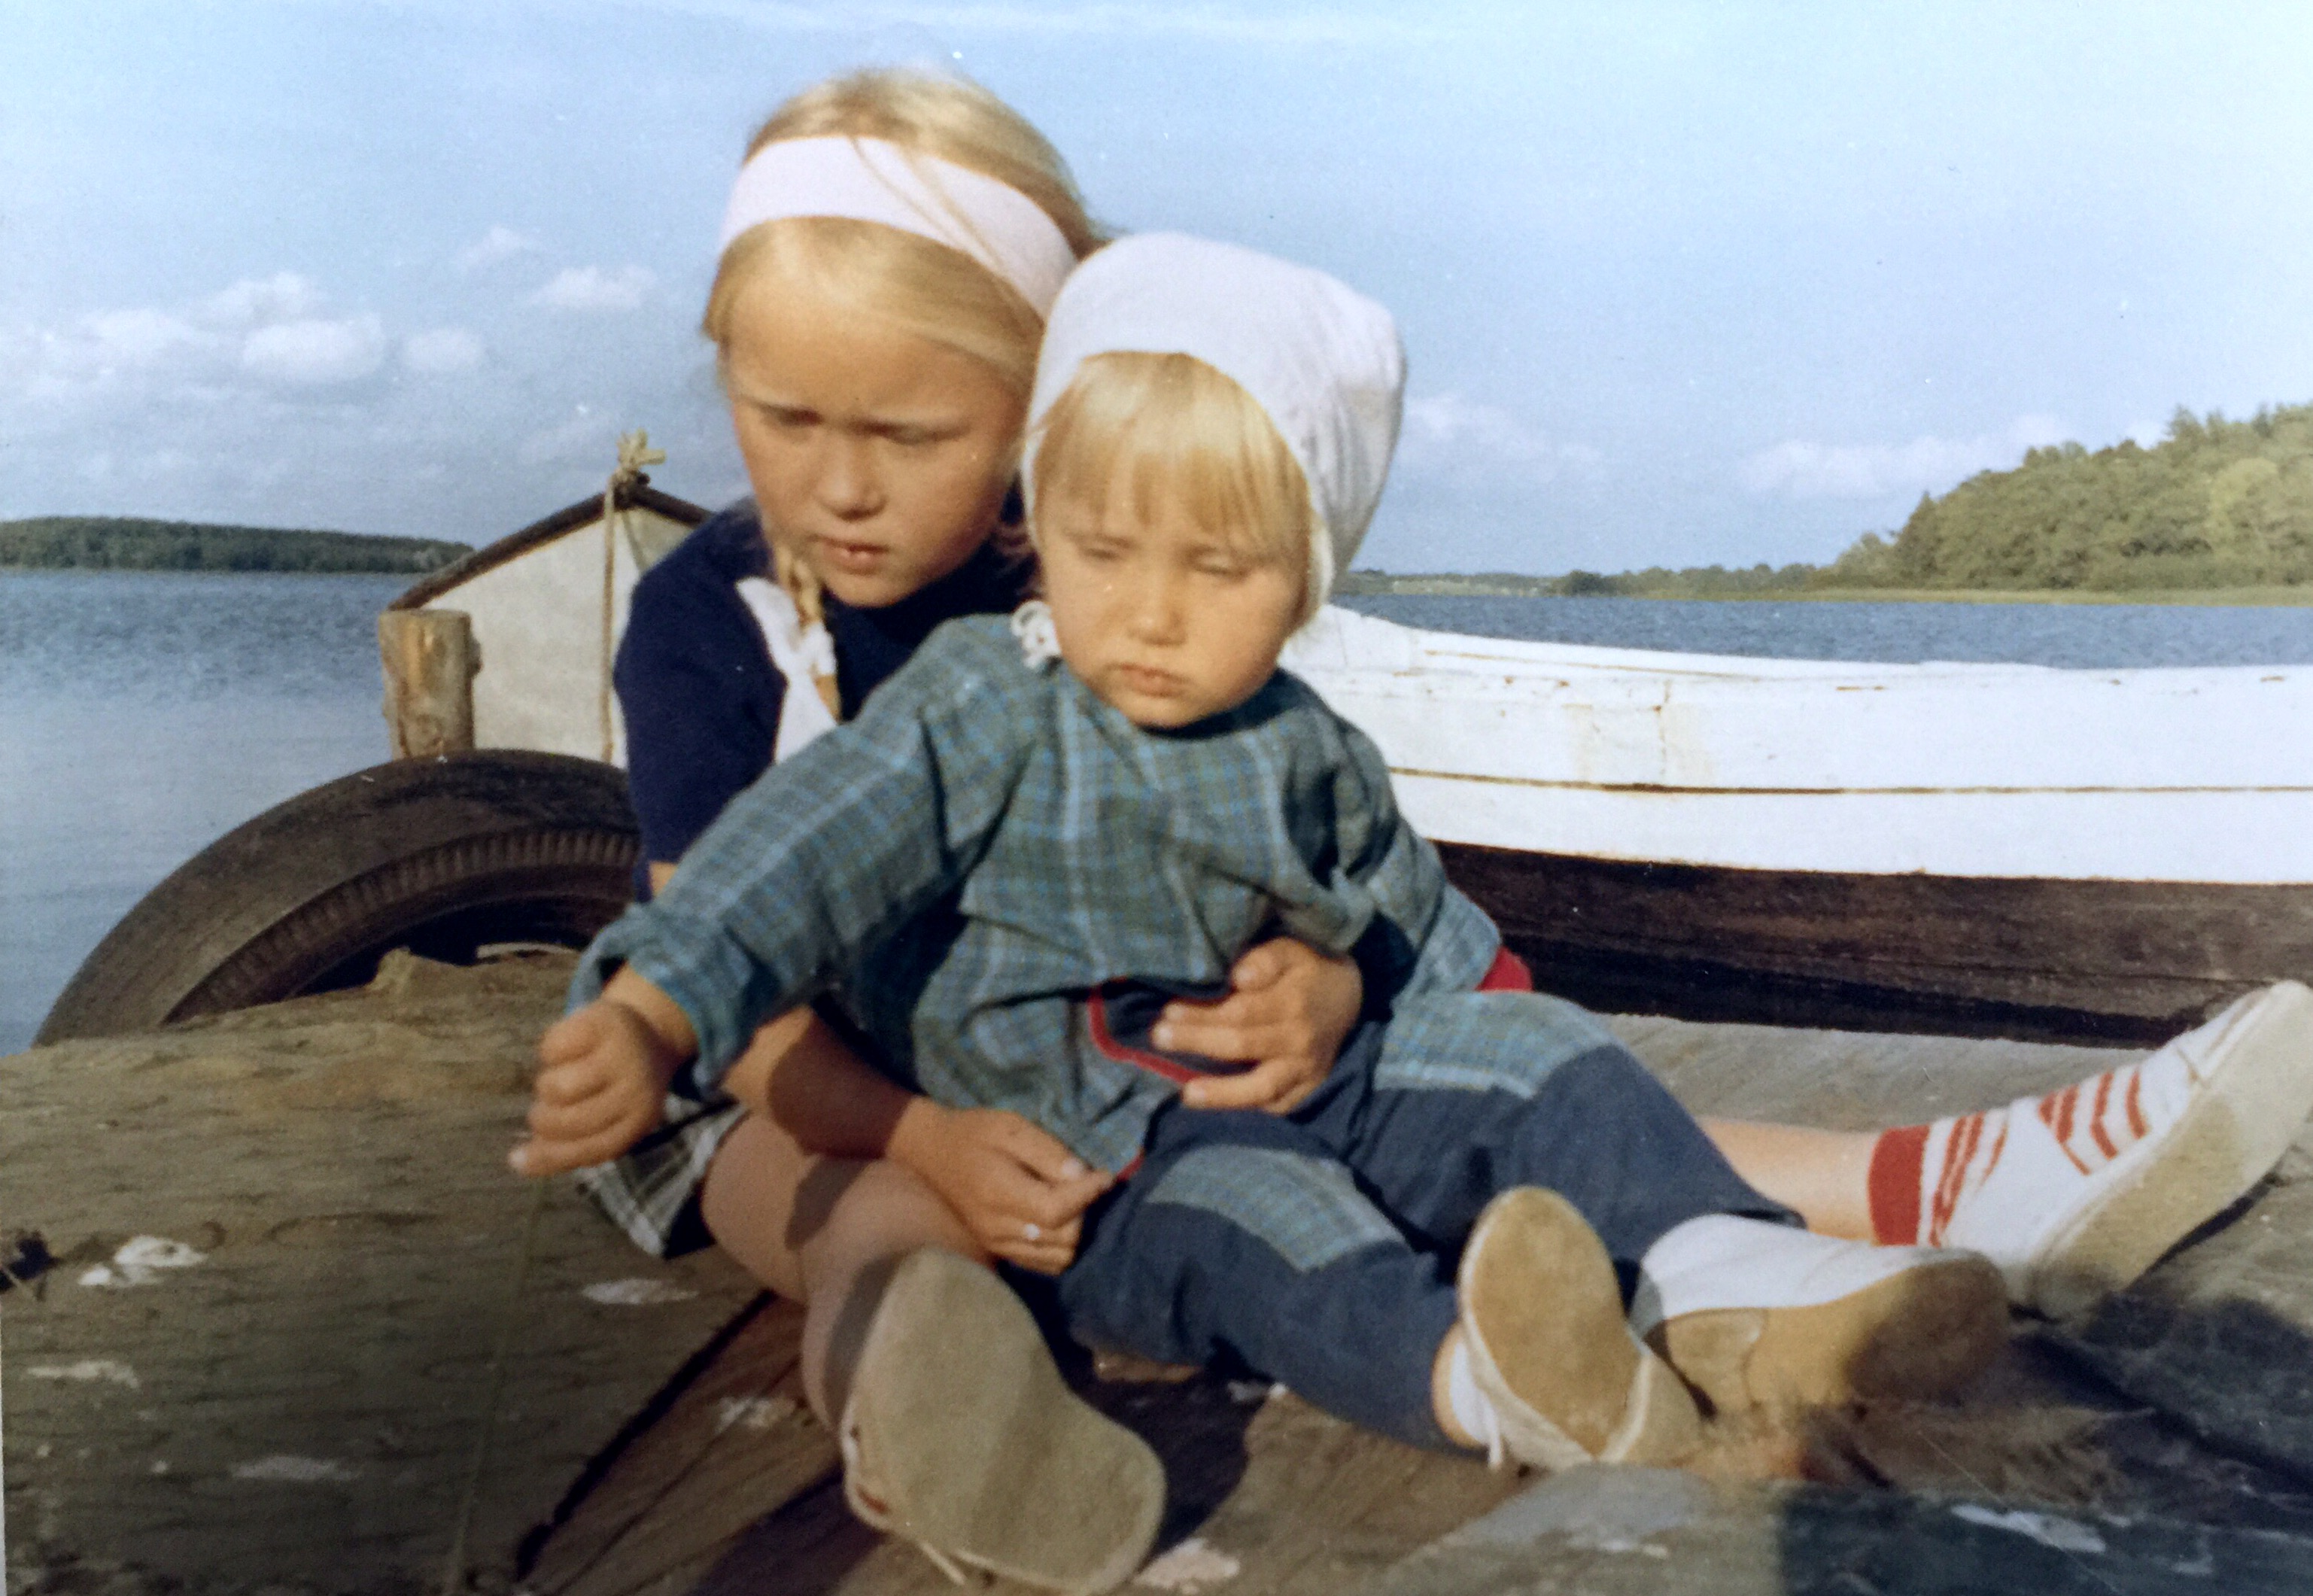 Me & my sister at Roskilde fjord Kattinge Vig summer 1965
